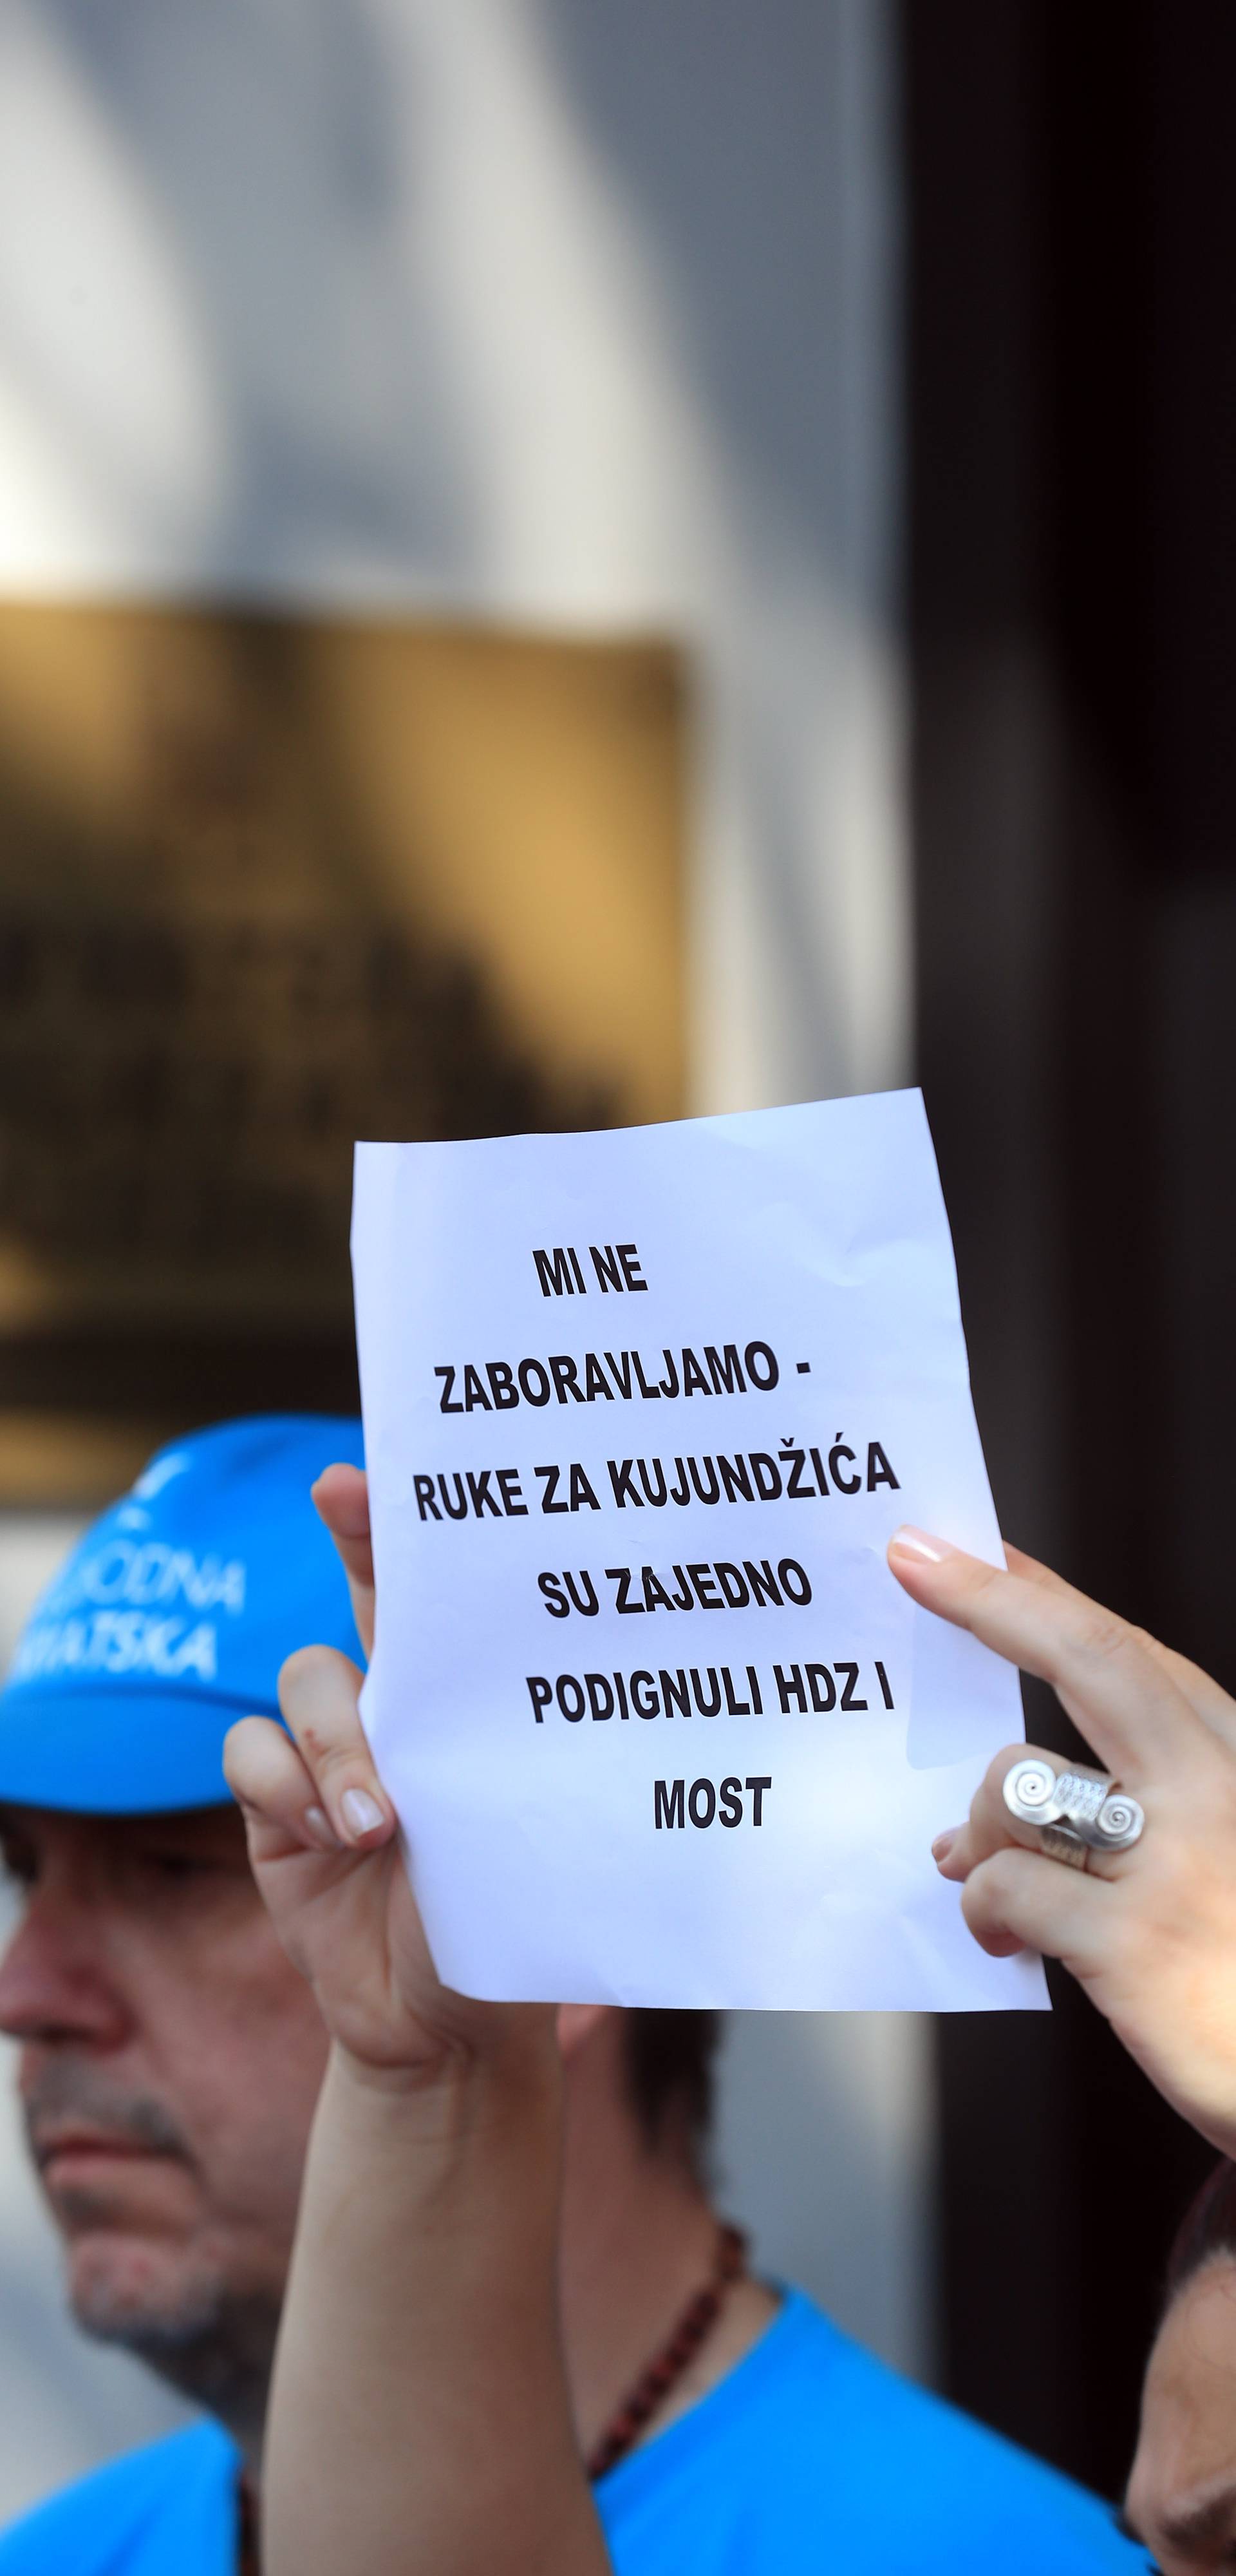 Zagreb: Älanovi Slobodne Hrvatske odrÅ¾ali prosvjed protiv ministra KujundÅ¾iÄa